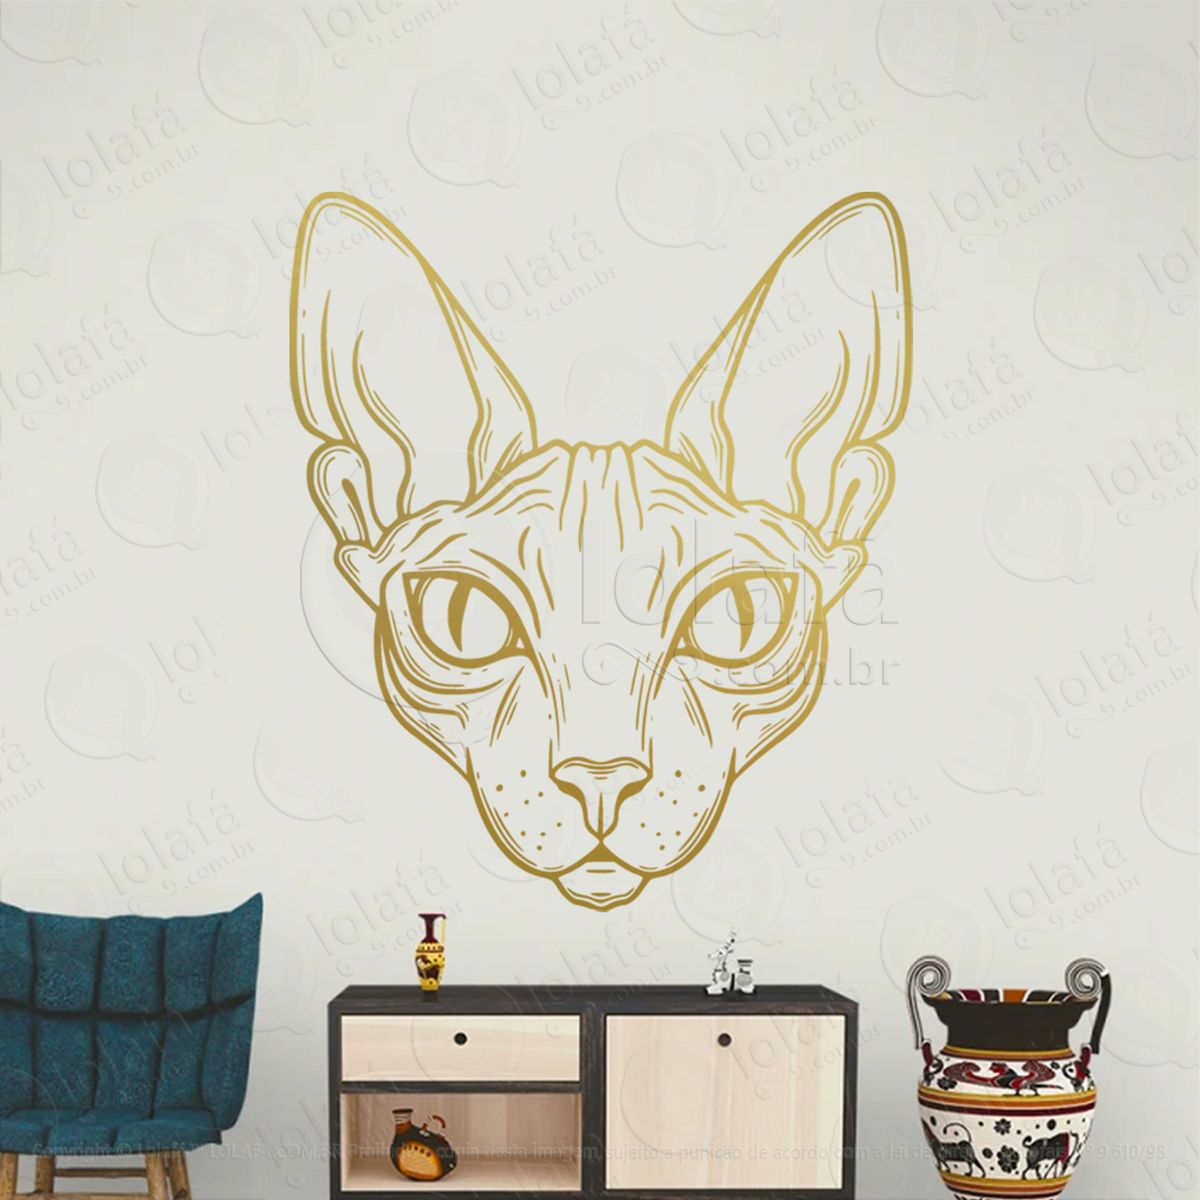 gato esfinge sphinx cat adesivo de parede decorativo para casa, sala, quarto, vidro e altar ocultista - mod:112